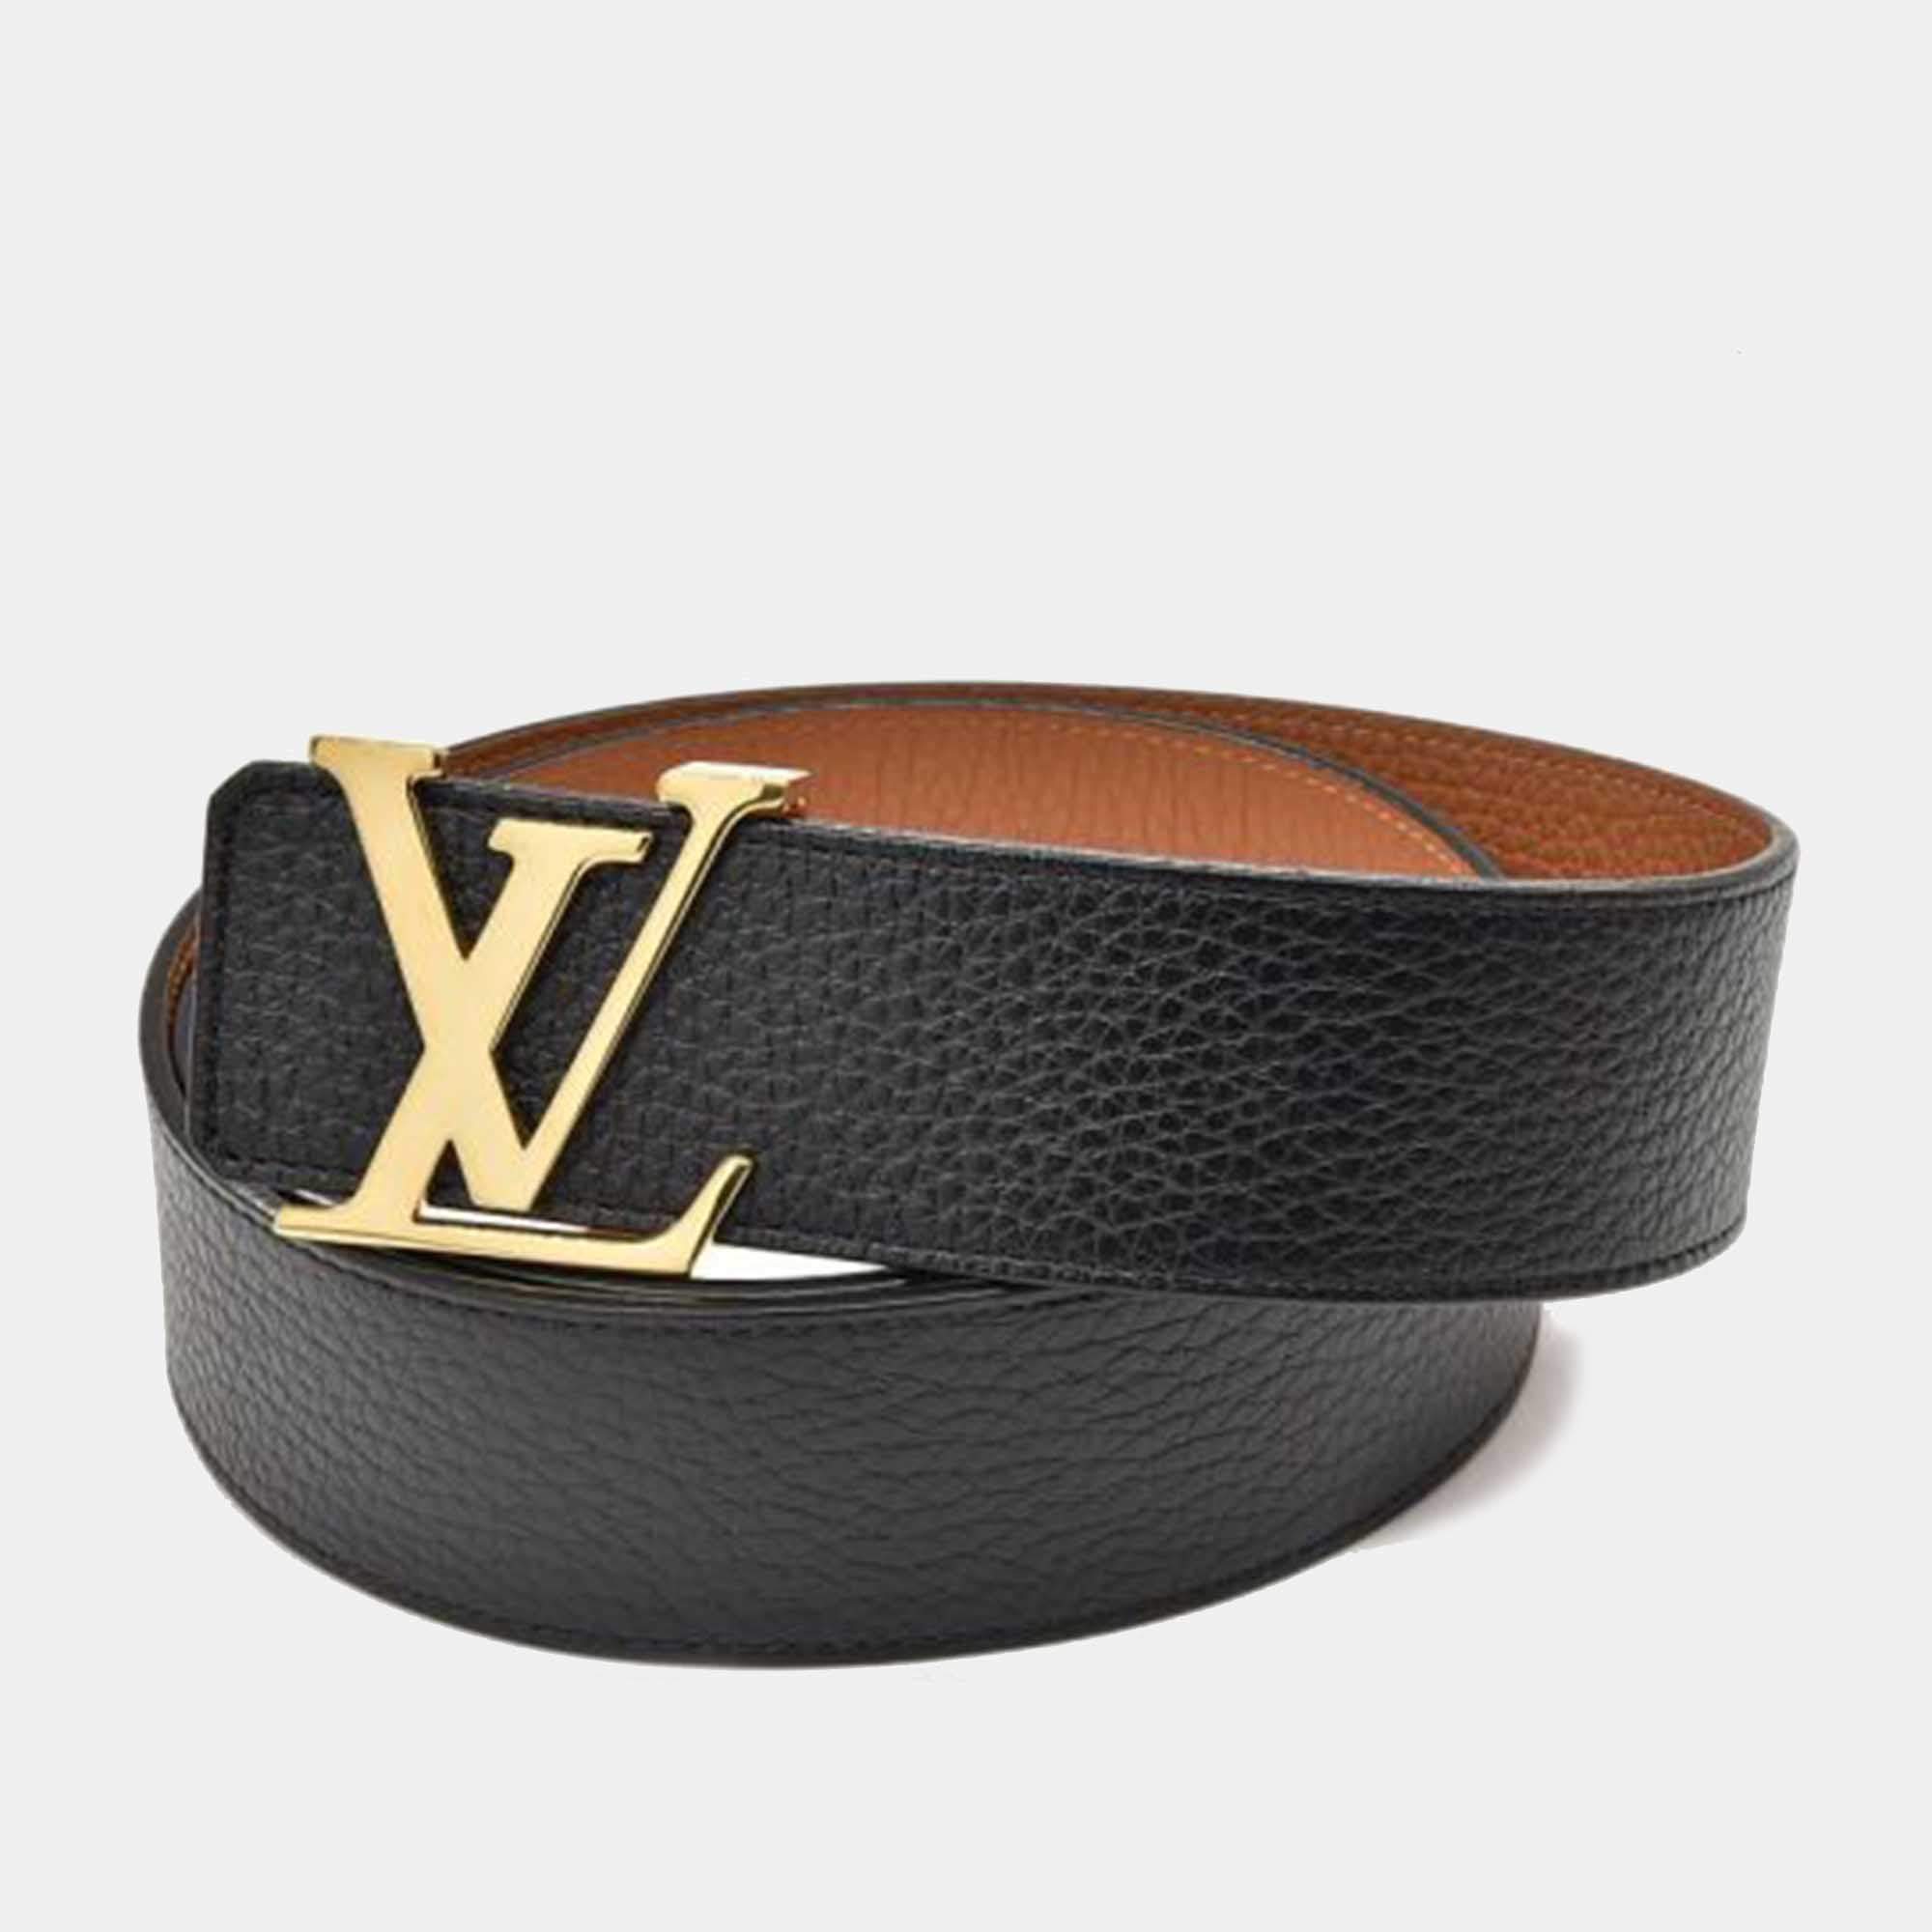 LV belt under 900 #wiseboywear #fyp